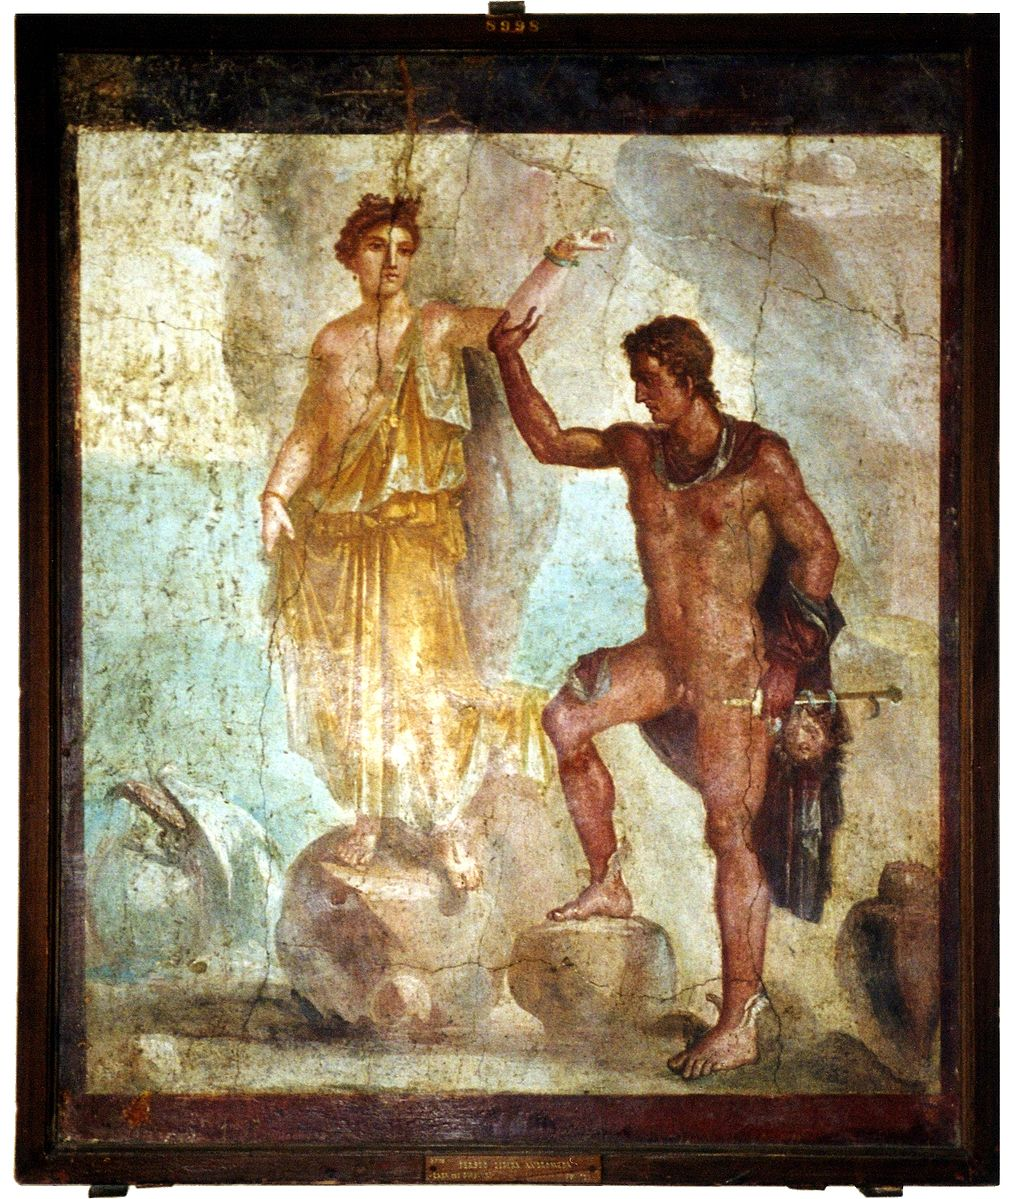 폼페이 벽화에 그려진 페르세우스와 안드로메다 ⓒ WIKI